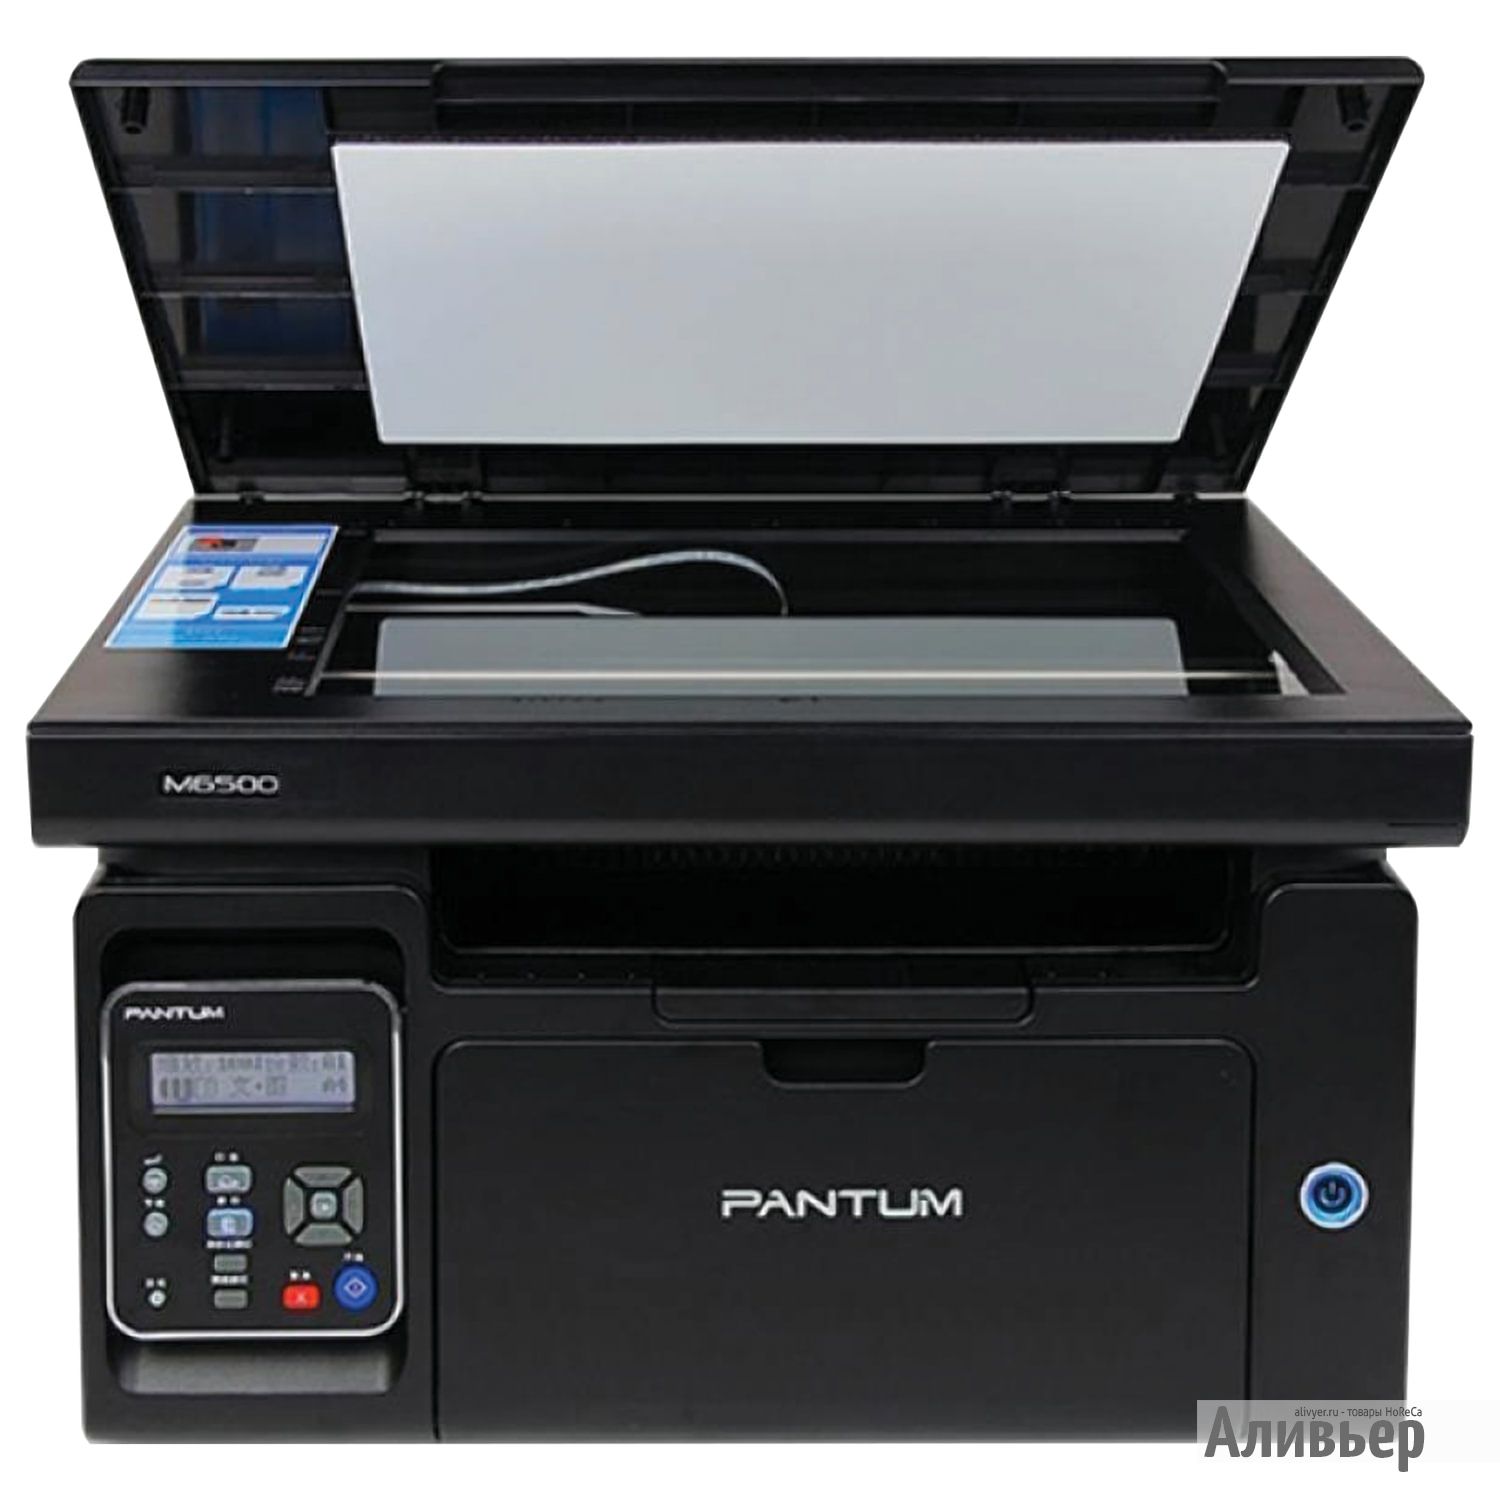 Купить принтер в оренбурге. Pantum m6500w. Принтер Pantum m6500. МФУ лазерное Pantum m6500w. МФУ Pantum m6500 (m6500).